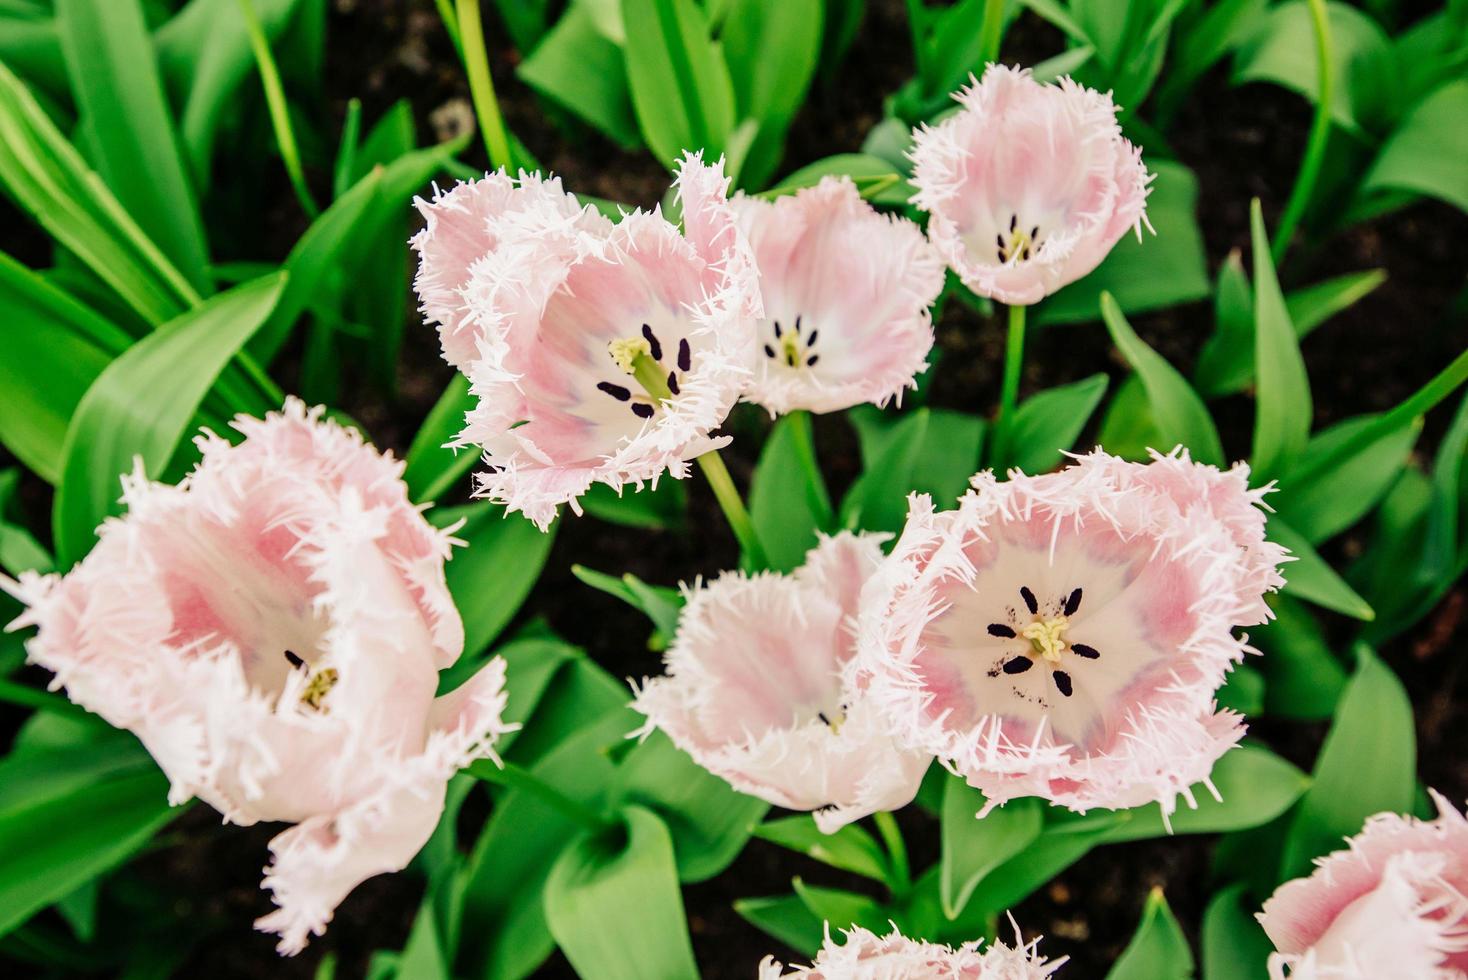 hermosos tulipanes rosas florecientes rizados. holanda europa. foto